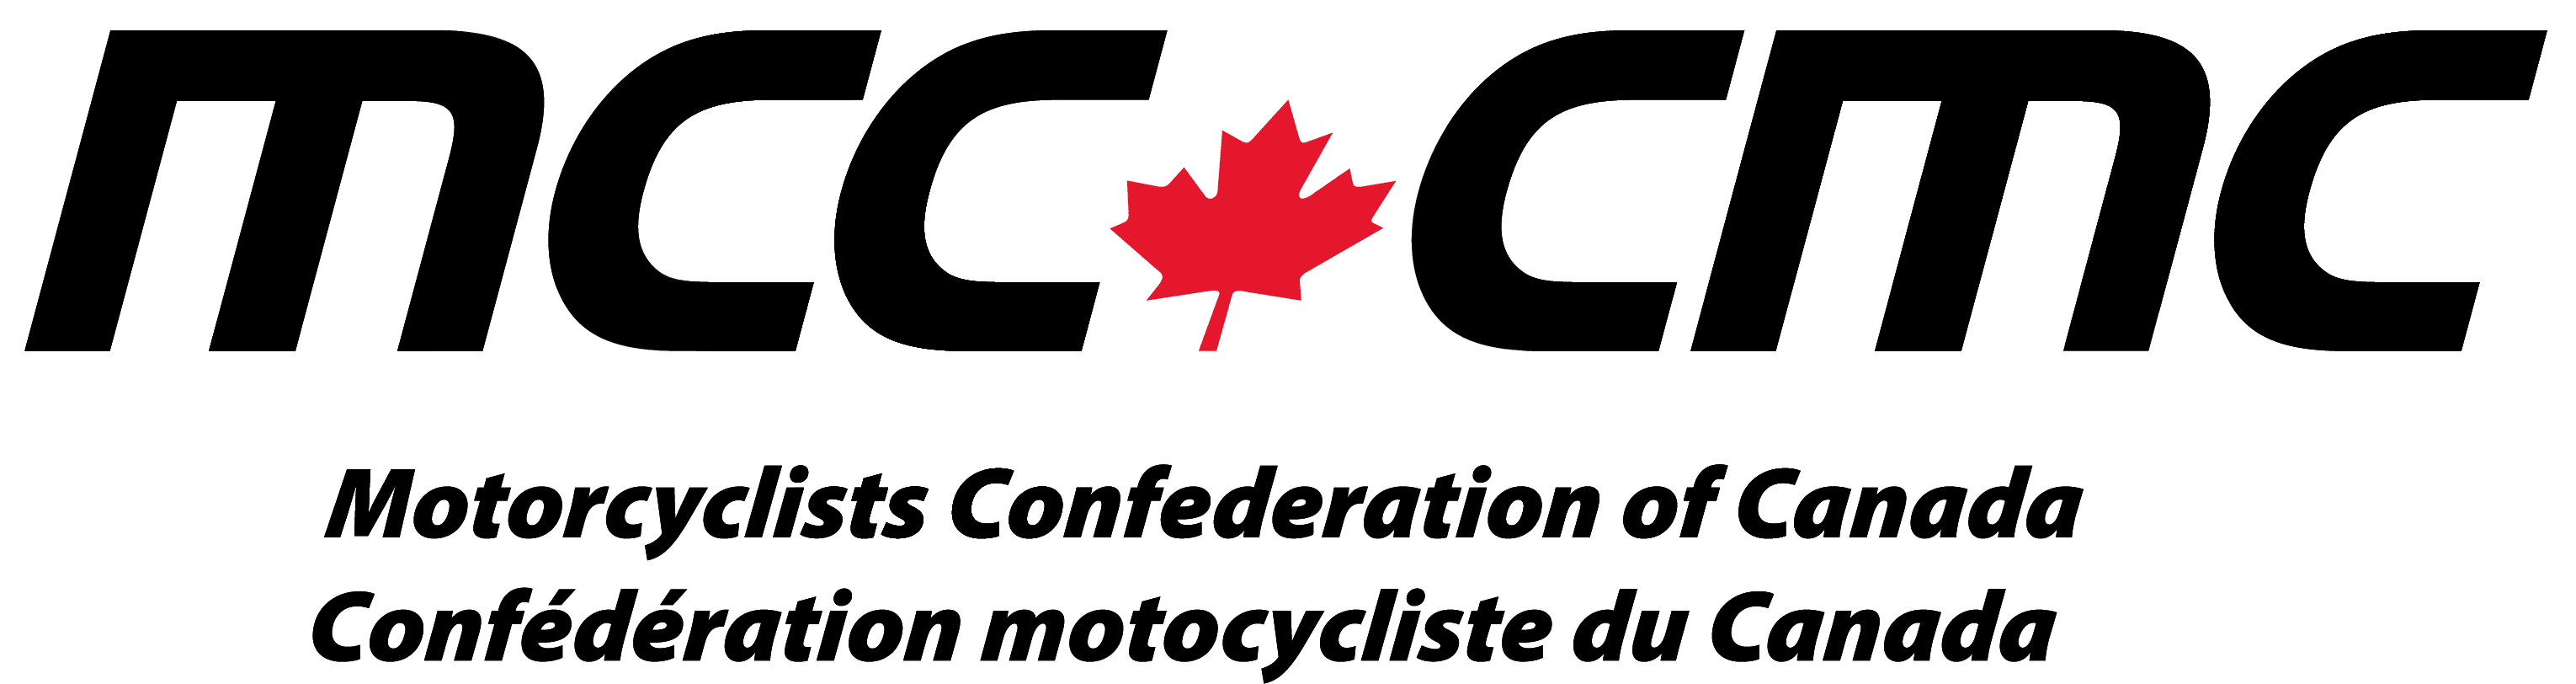 Motorcyclists Confederation of Canada